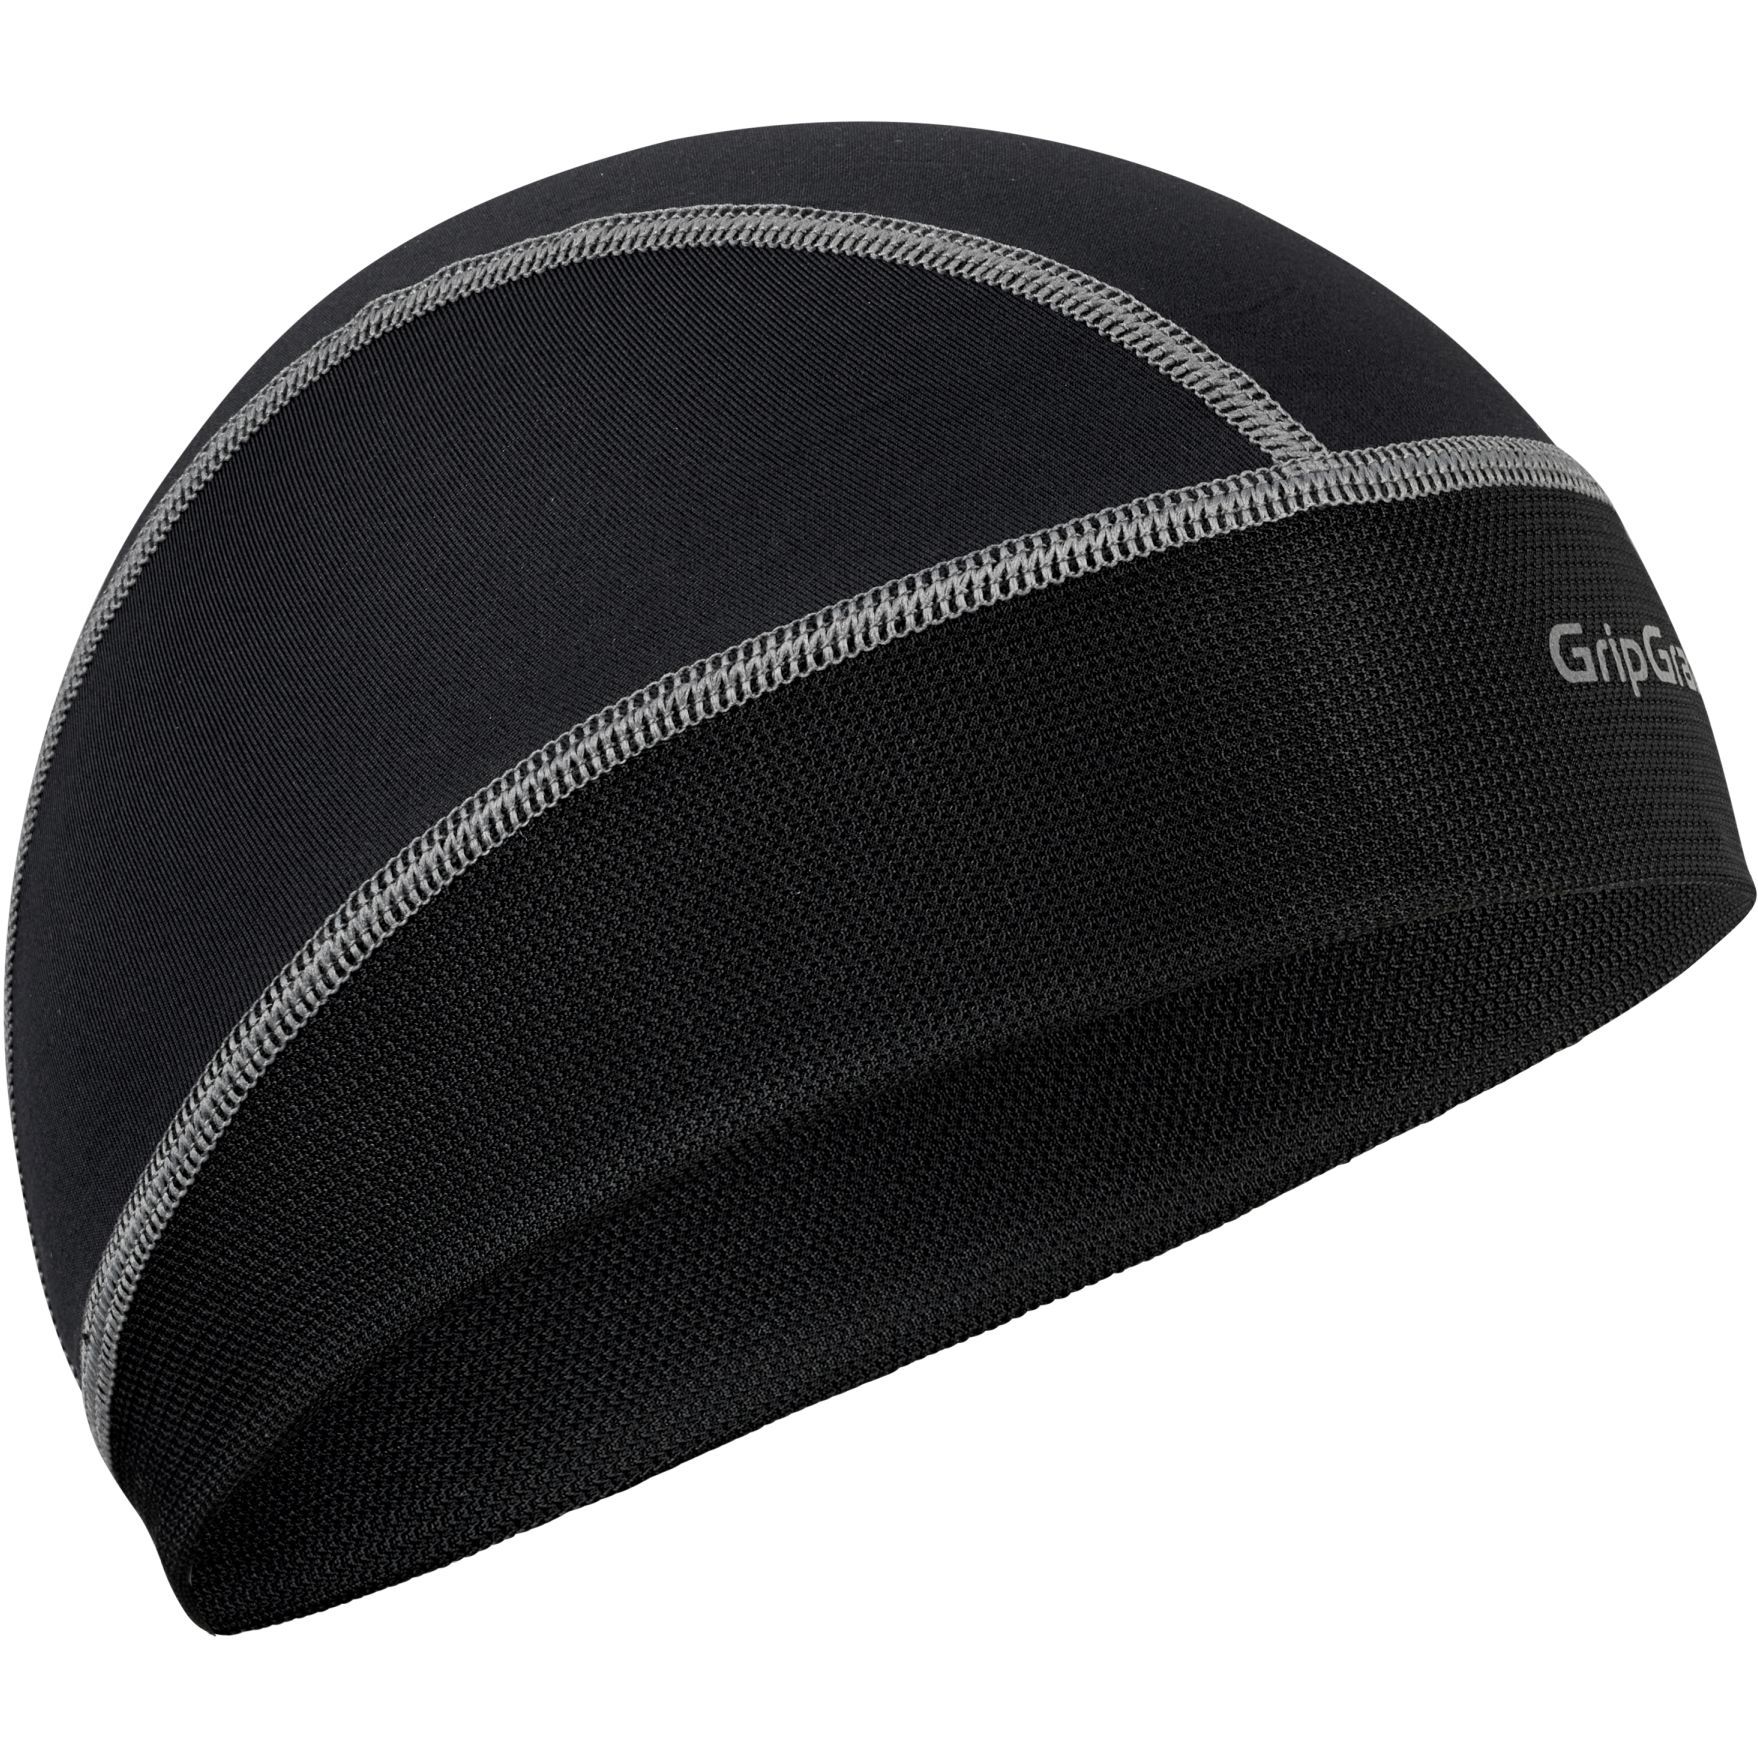 Produktbild von GripGrab UPF 50+ Leichte Sommer Unterhelm Mütze - Black